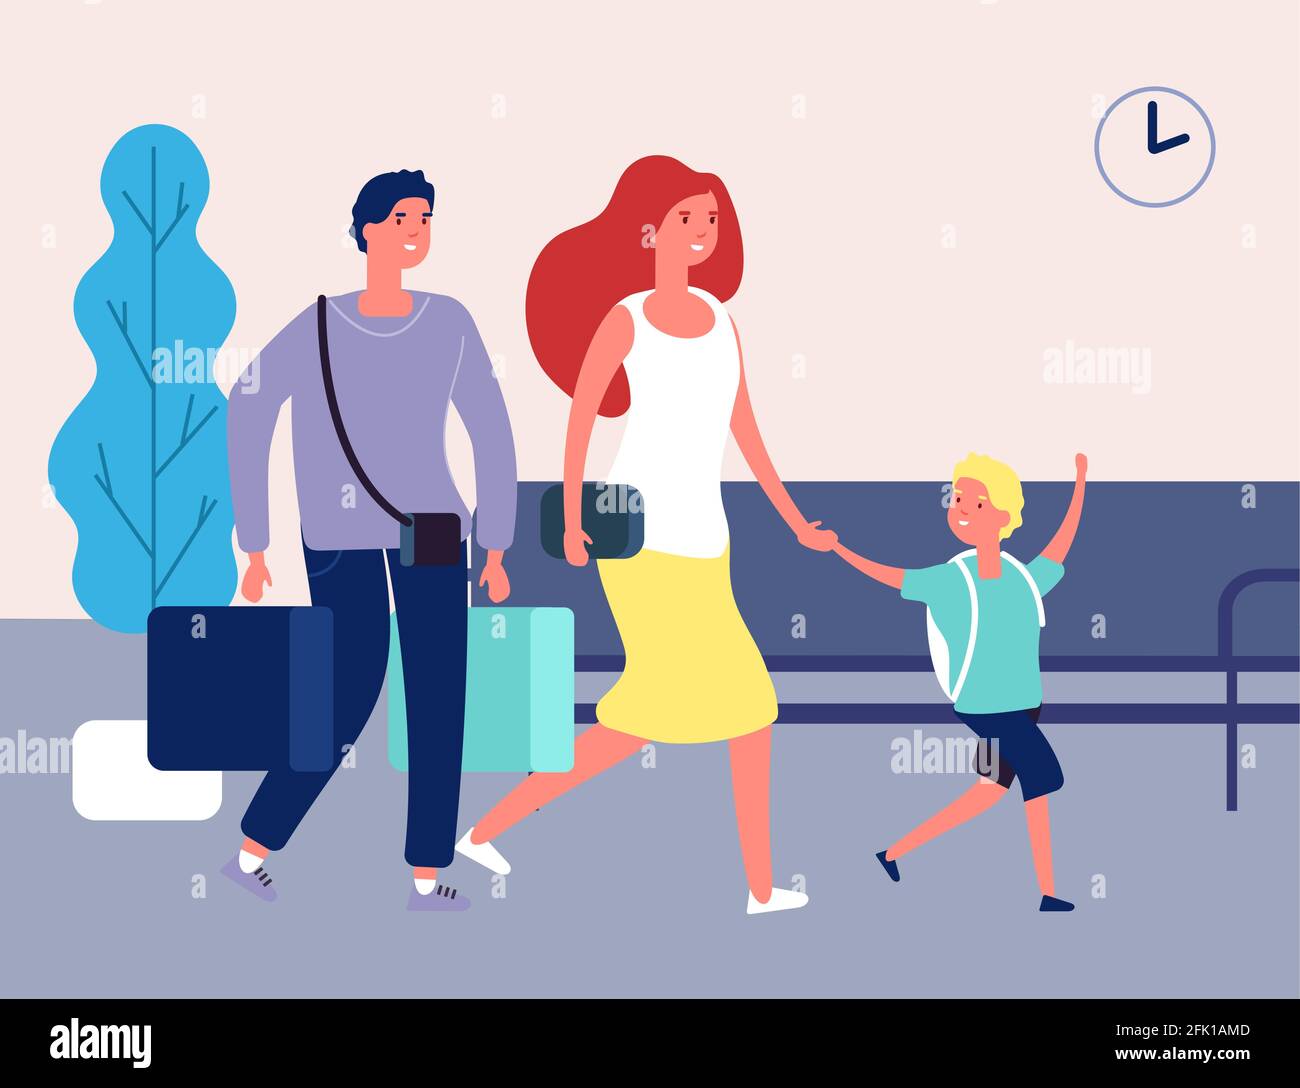 Familienurlaub. Menschen am Flughafen, Busbahnhof. Internationale Terminal Frau Mann und Kind mit Koffern Vektor-Illustration Stock Vektor